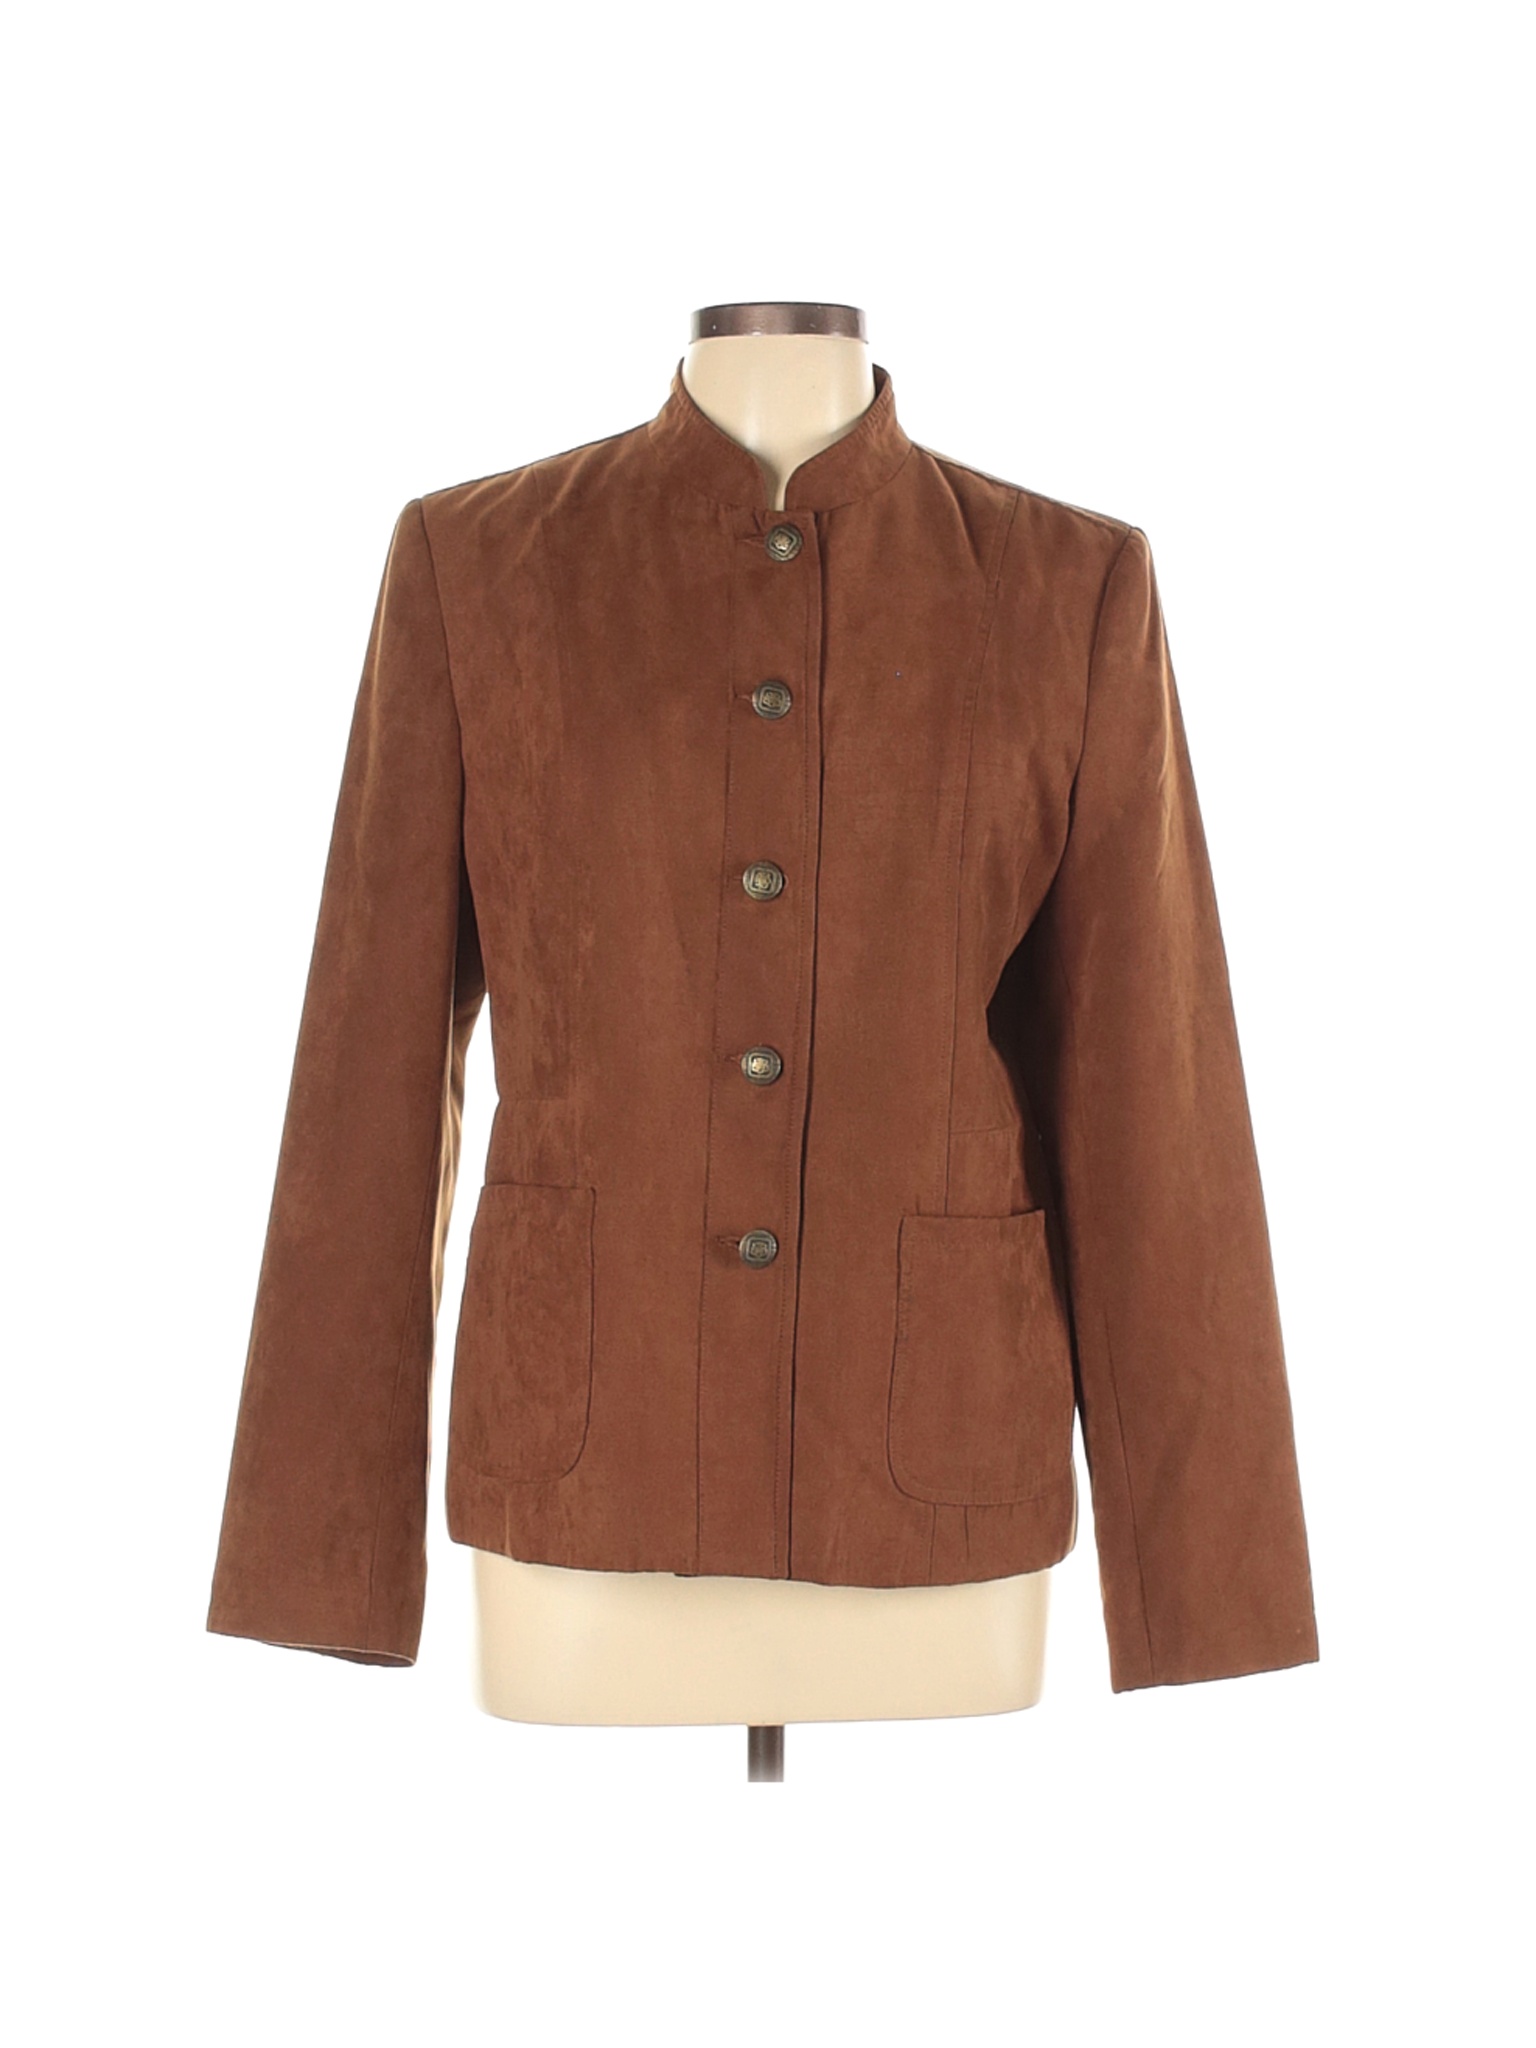 DressBarn Women Brown Jacket L | eBay